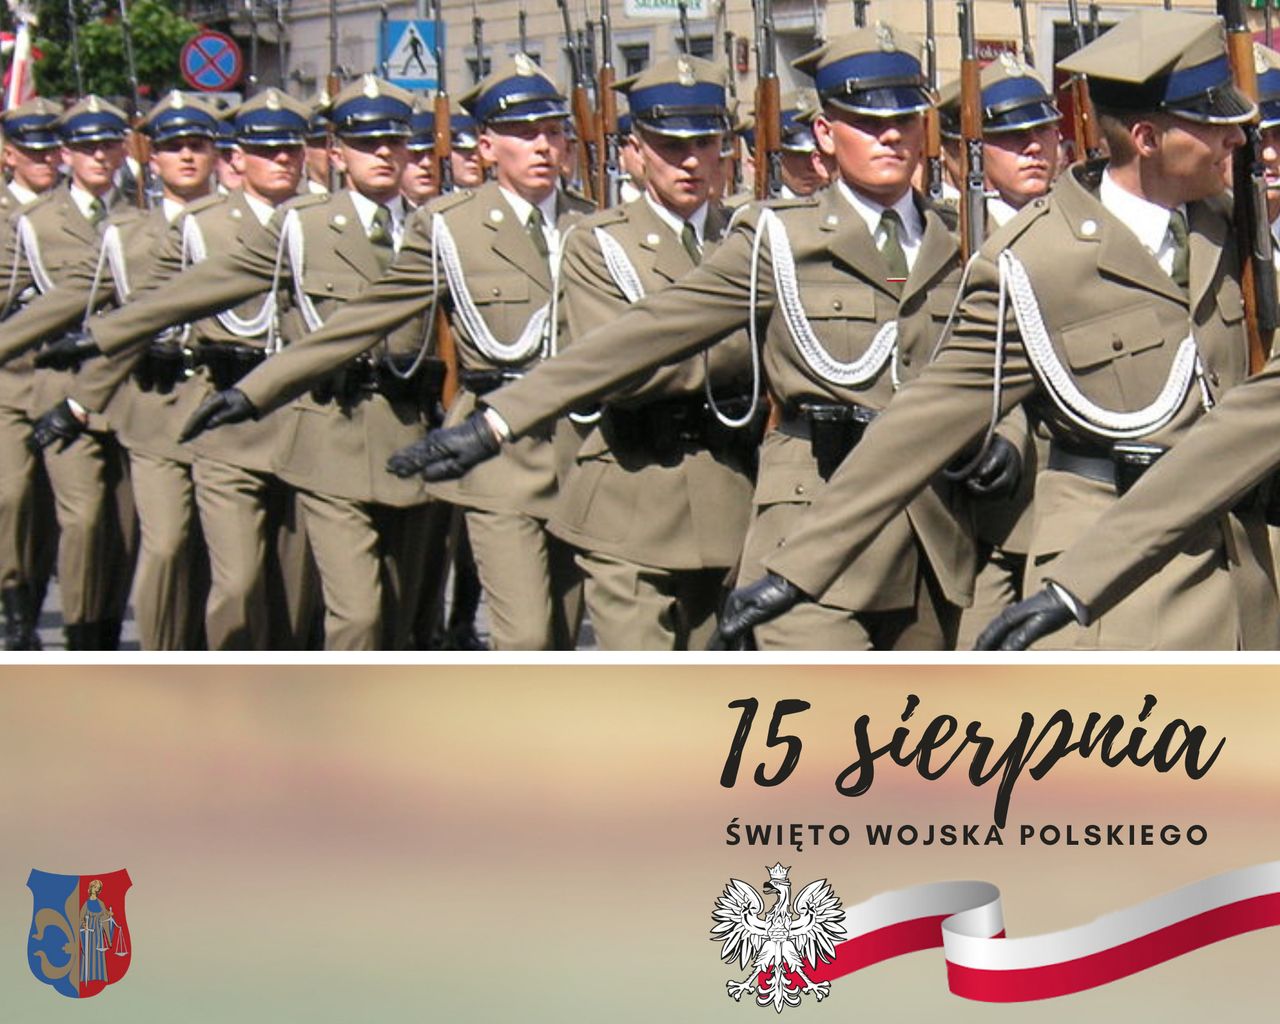 15 sierpnia-Święto Wojska Polskiego